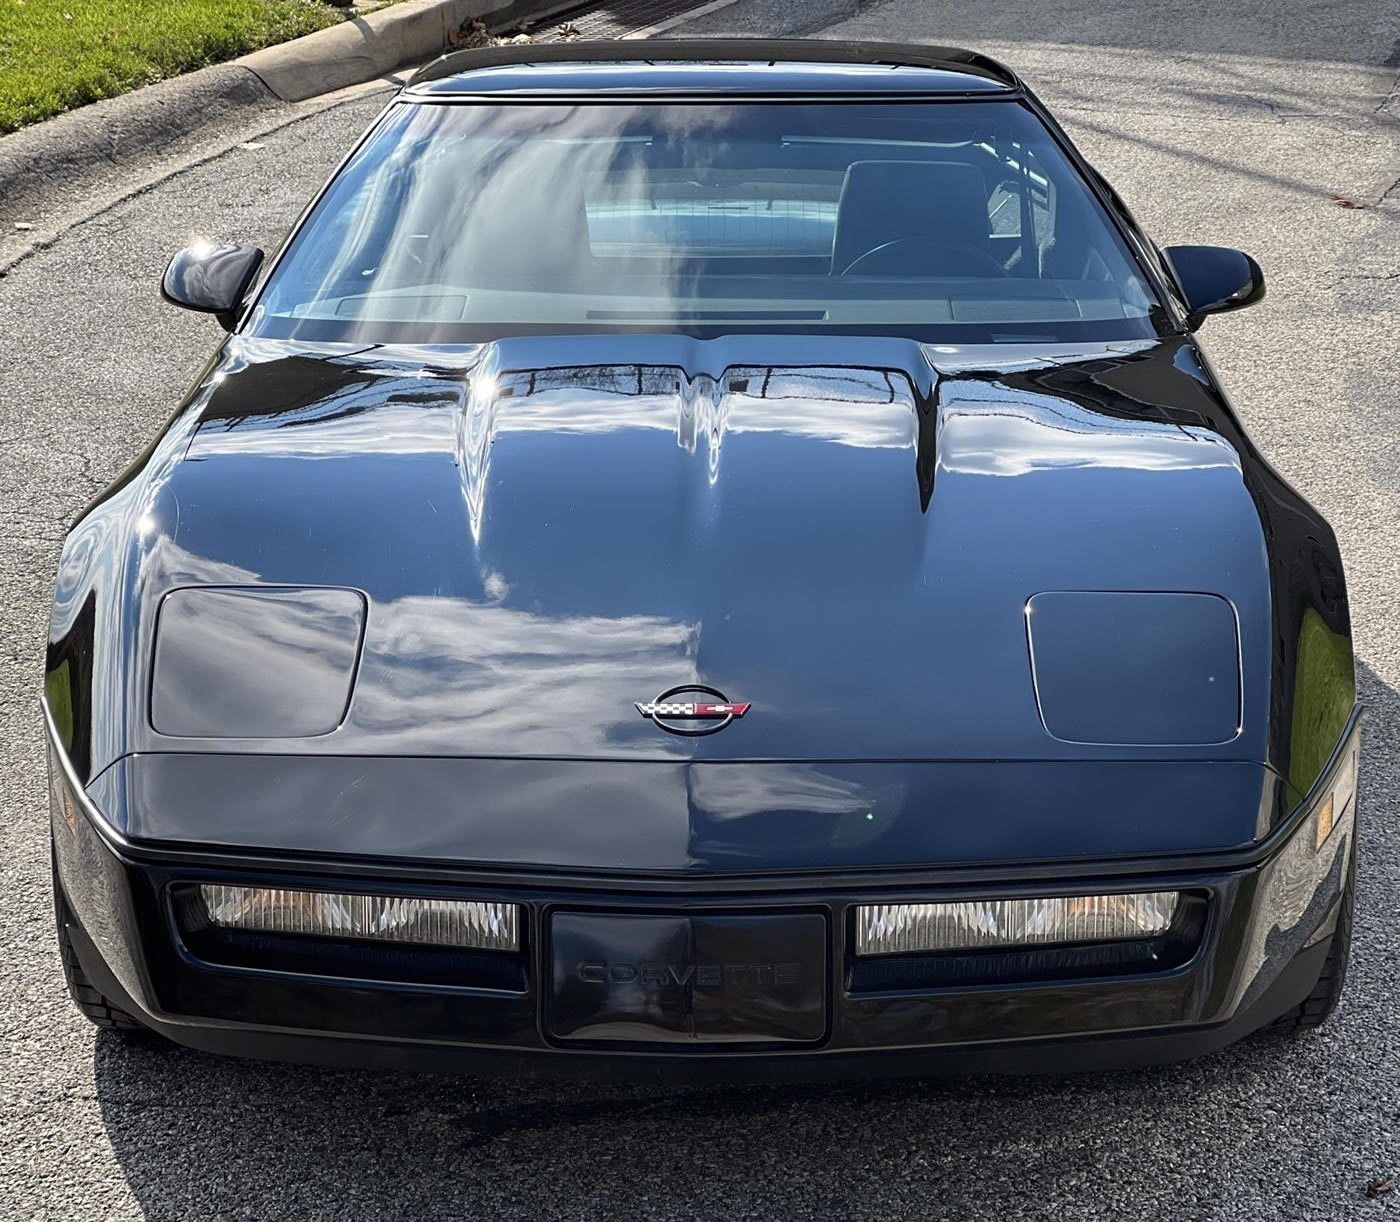 1984 Corvette Z51 4-Speed in Black